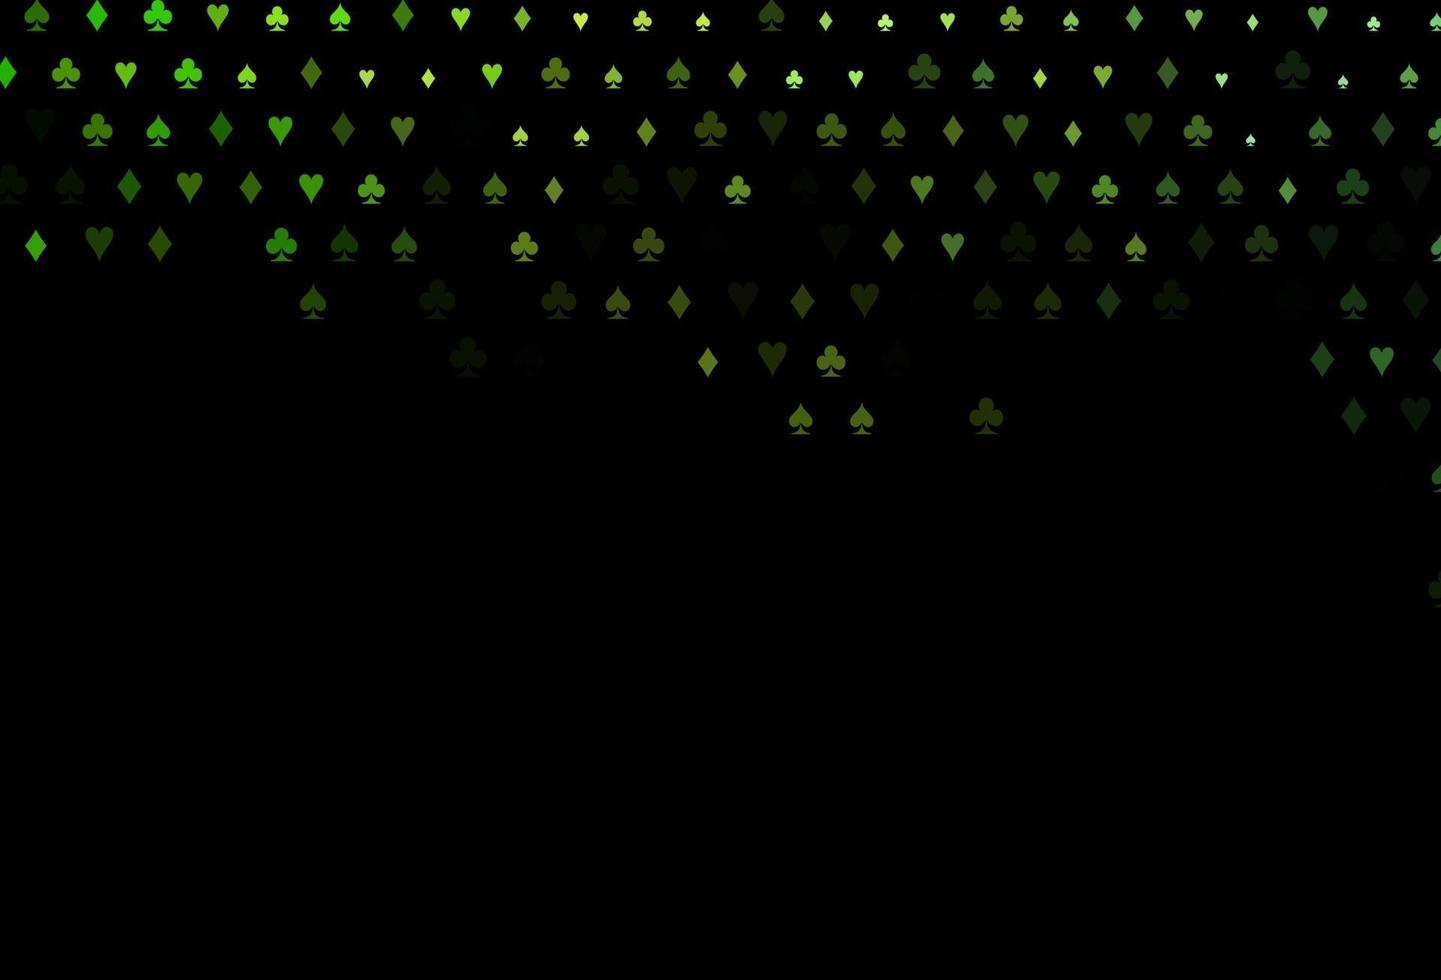 layout de vetor verde escuro com elementos de cartas.